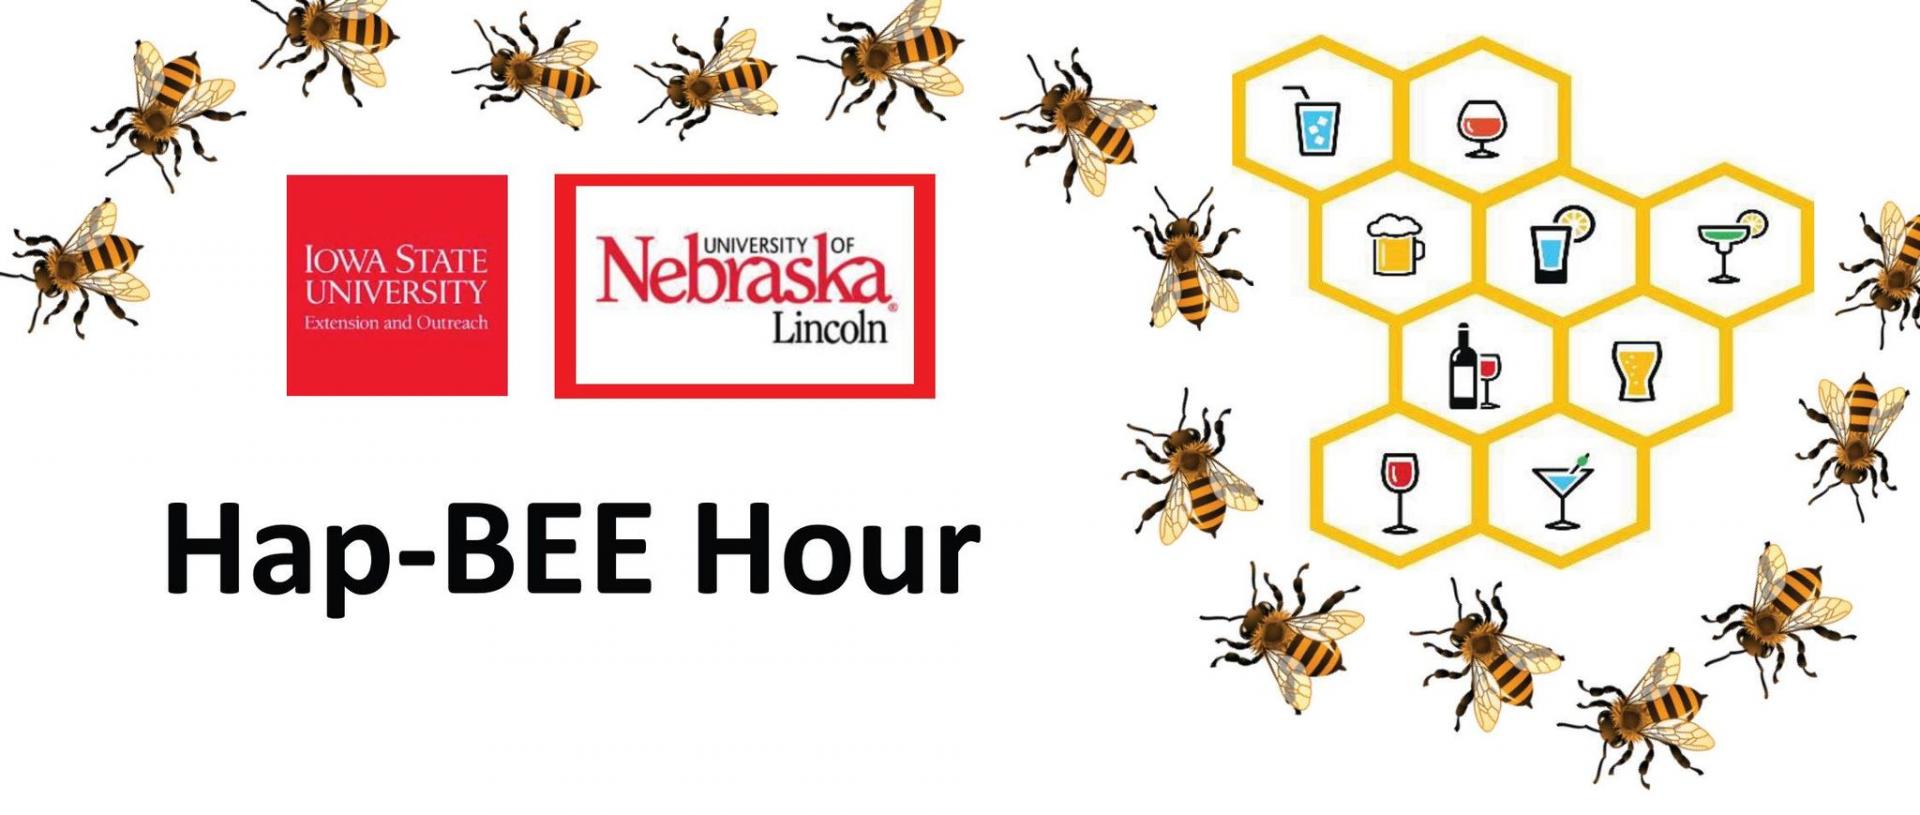 hap-bee hour logo